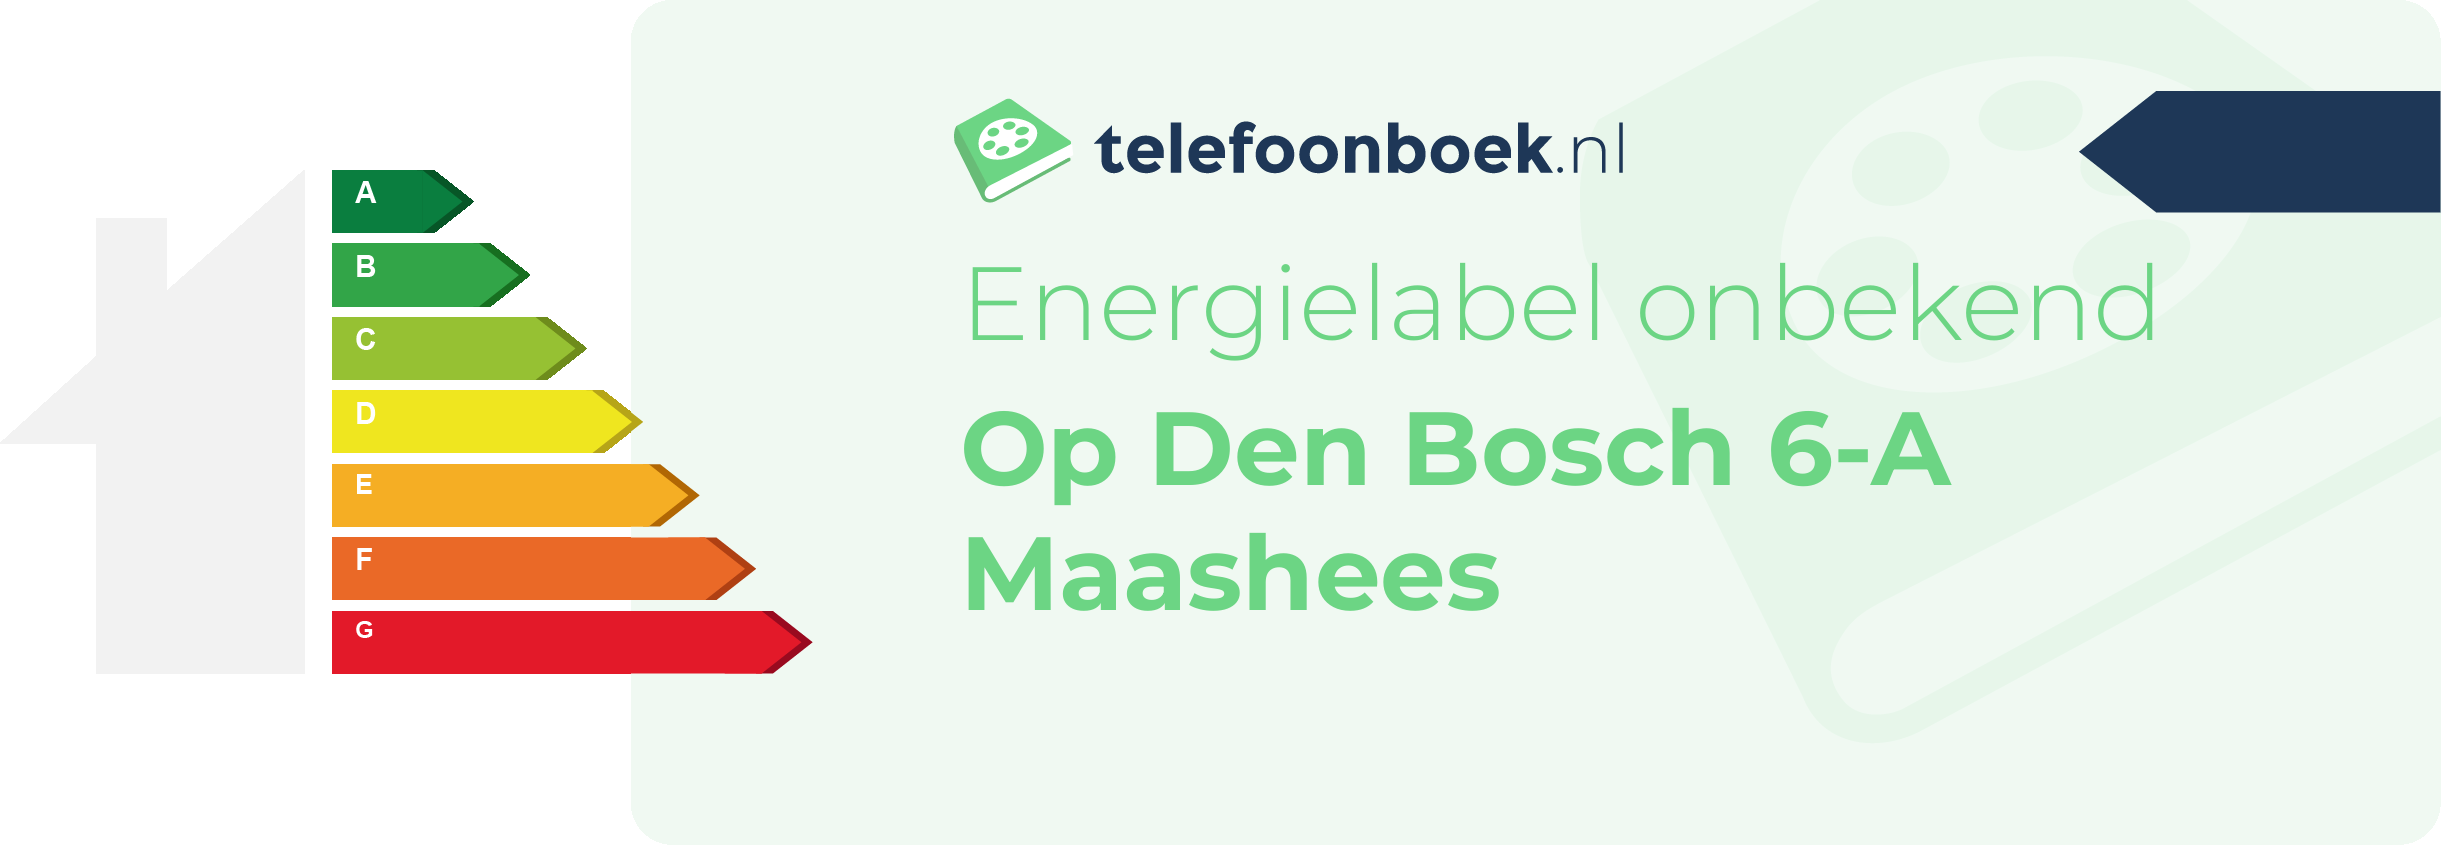 Energielabel Op Den Bosch 6-A Maashees